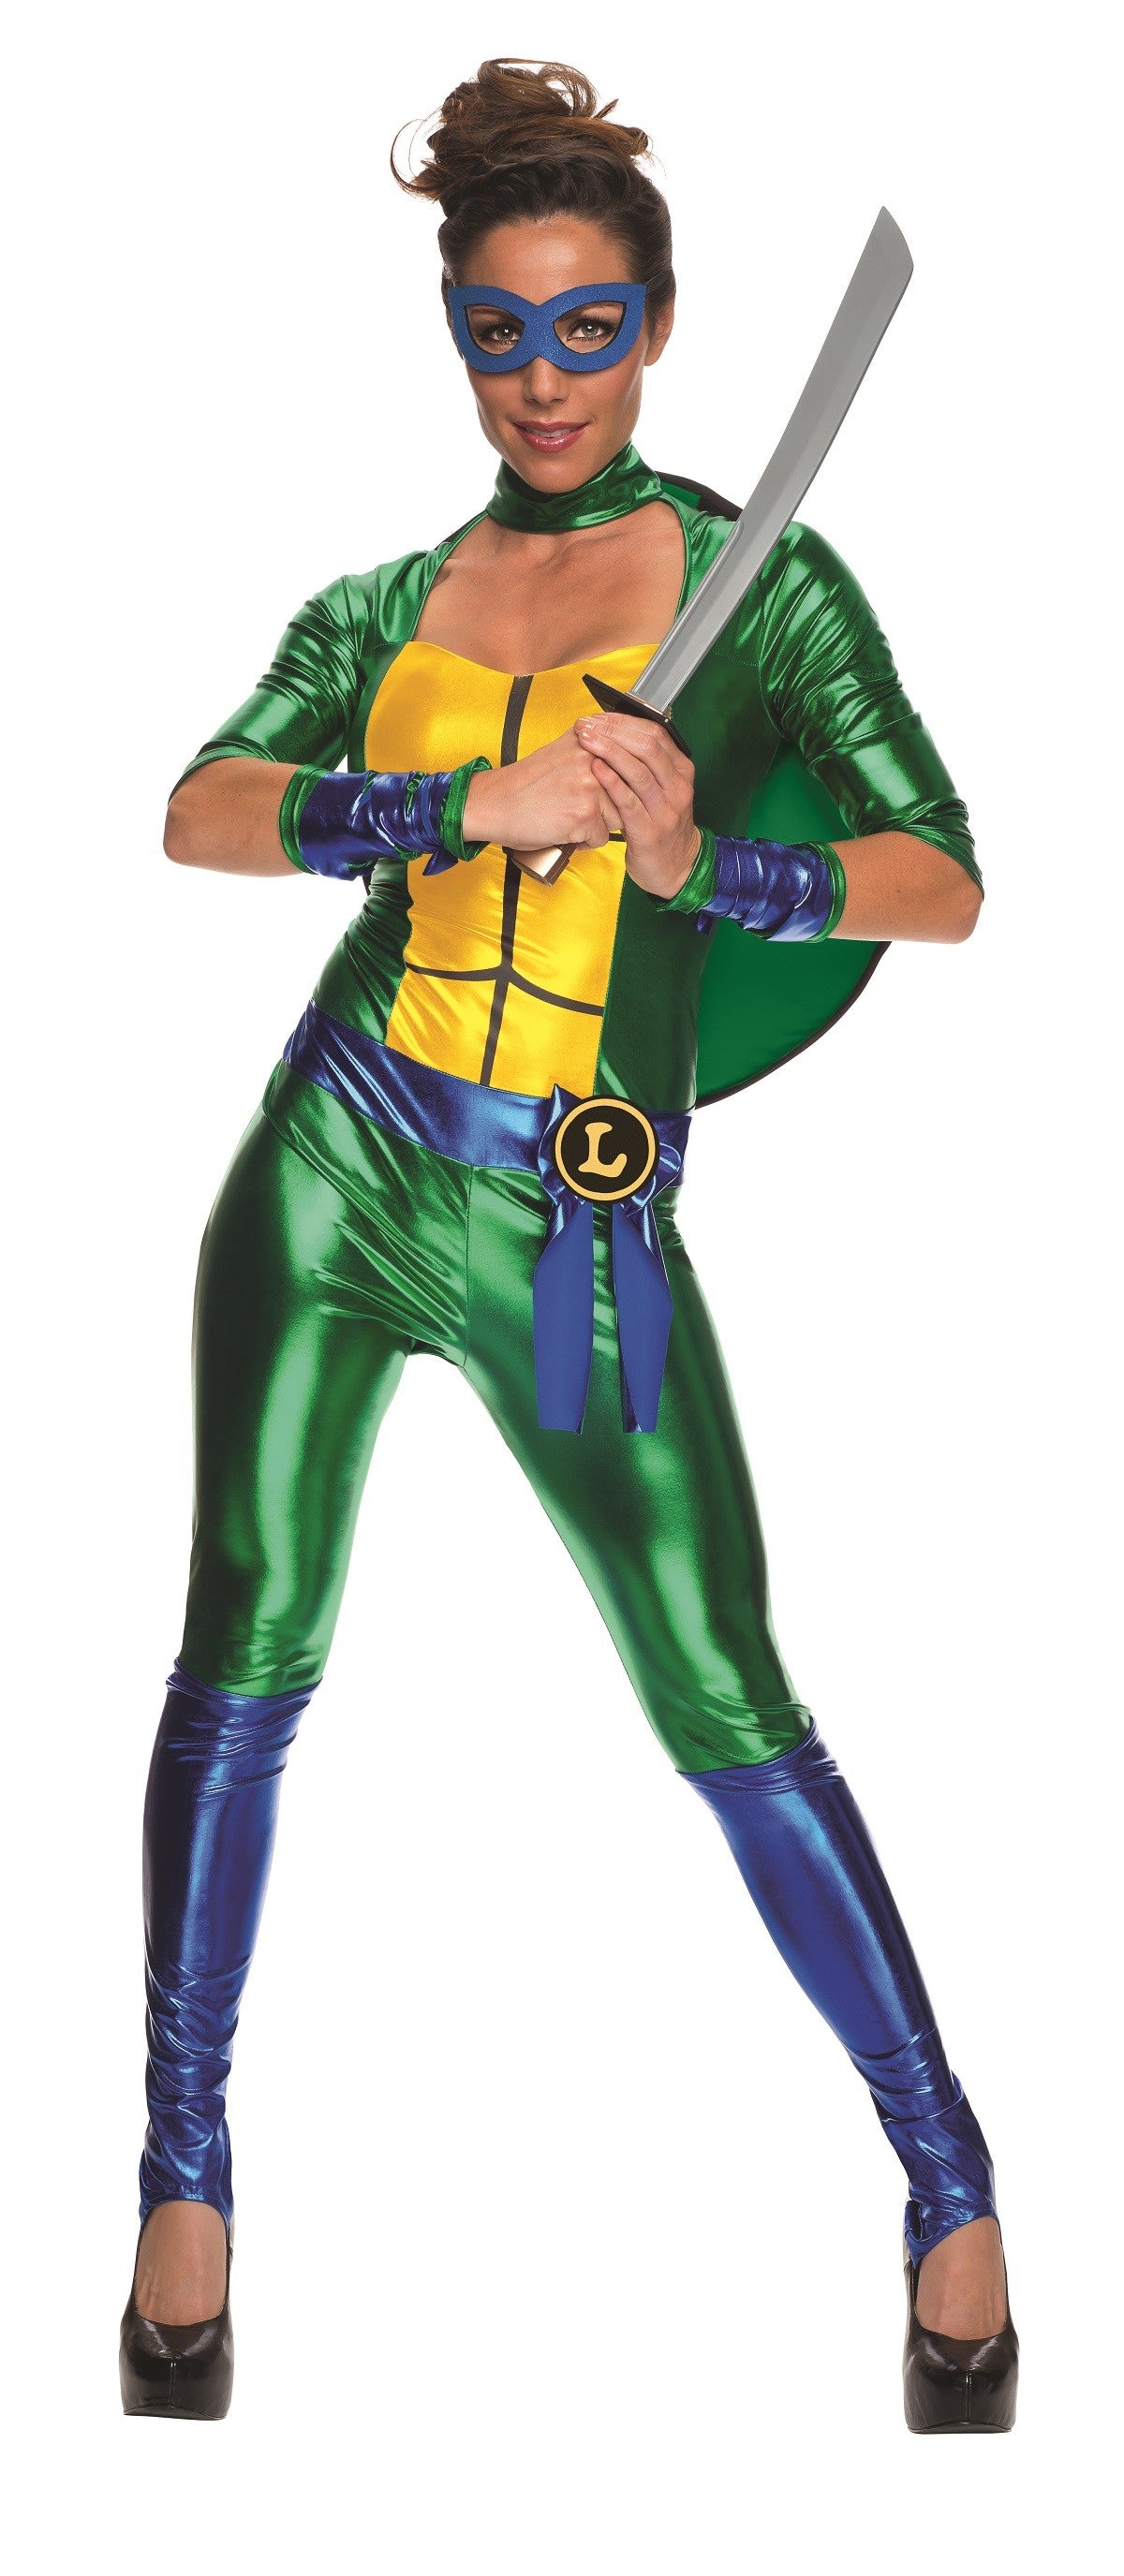 Teenage Mutant Ninja Turtles - Leonardo